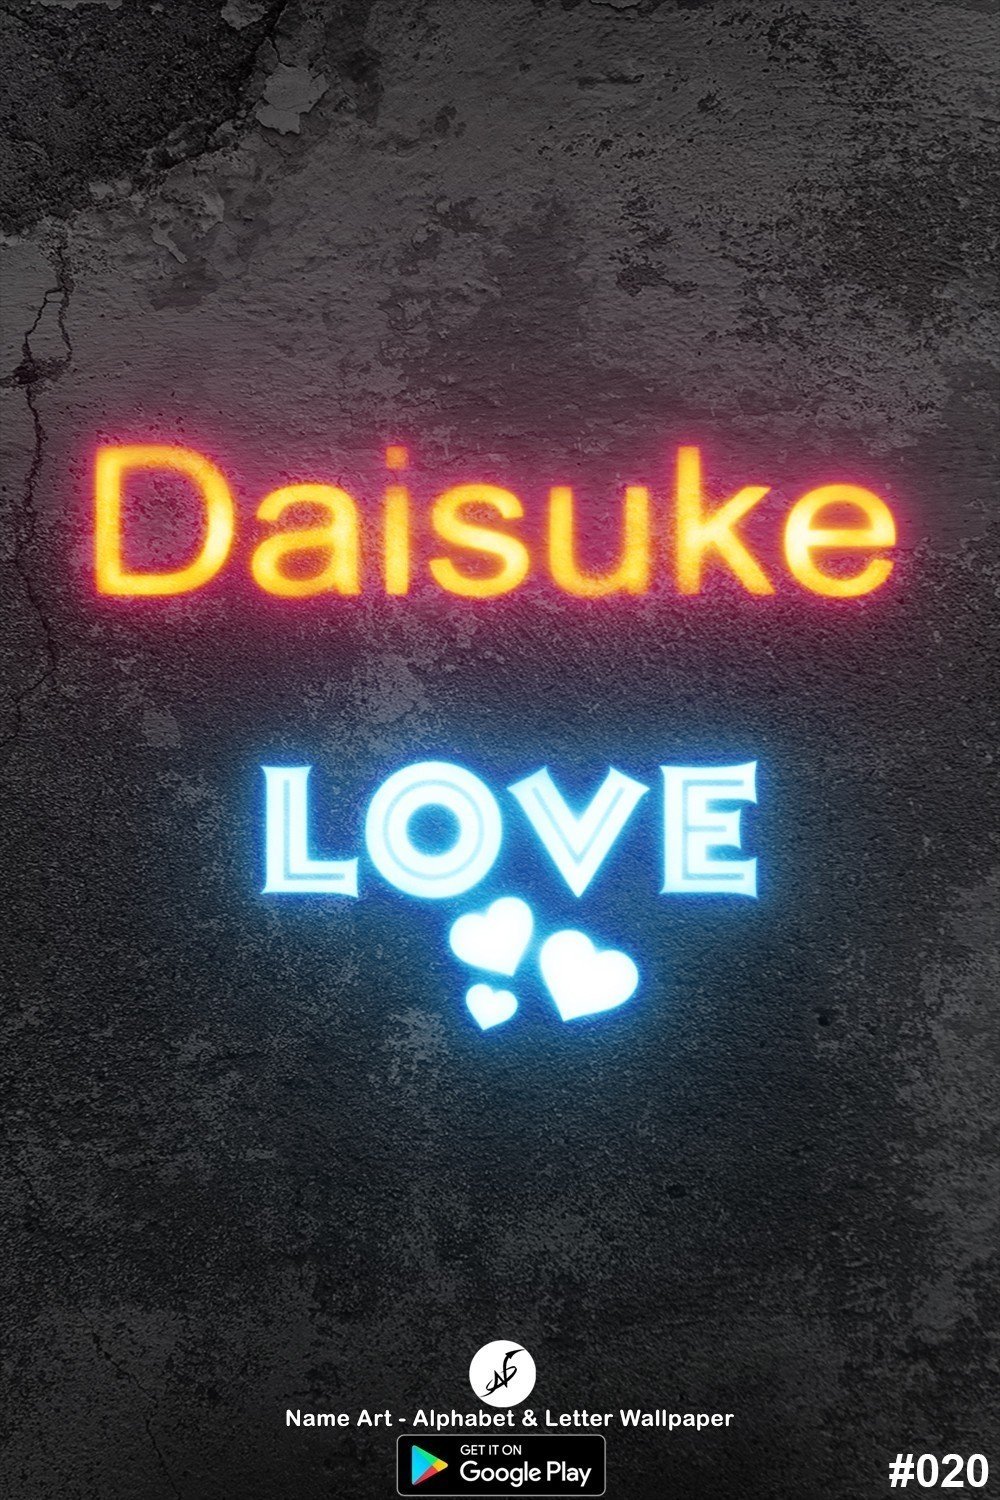 Daisuke | Whatsapp Status Daisuke | Happy Birthday Daisuke !! | New Whatsapp Status Daisuke Images |